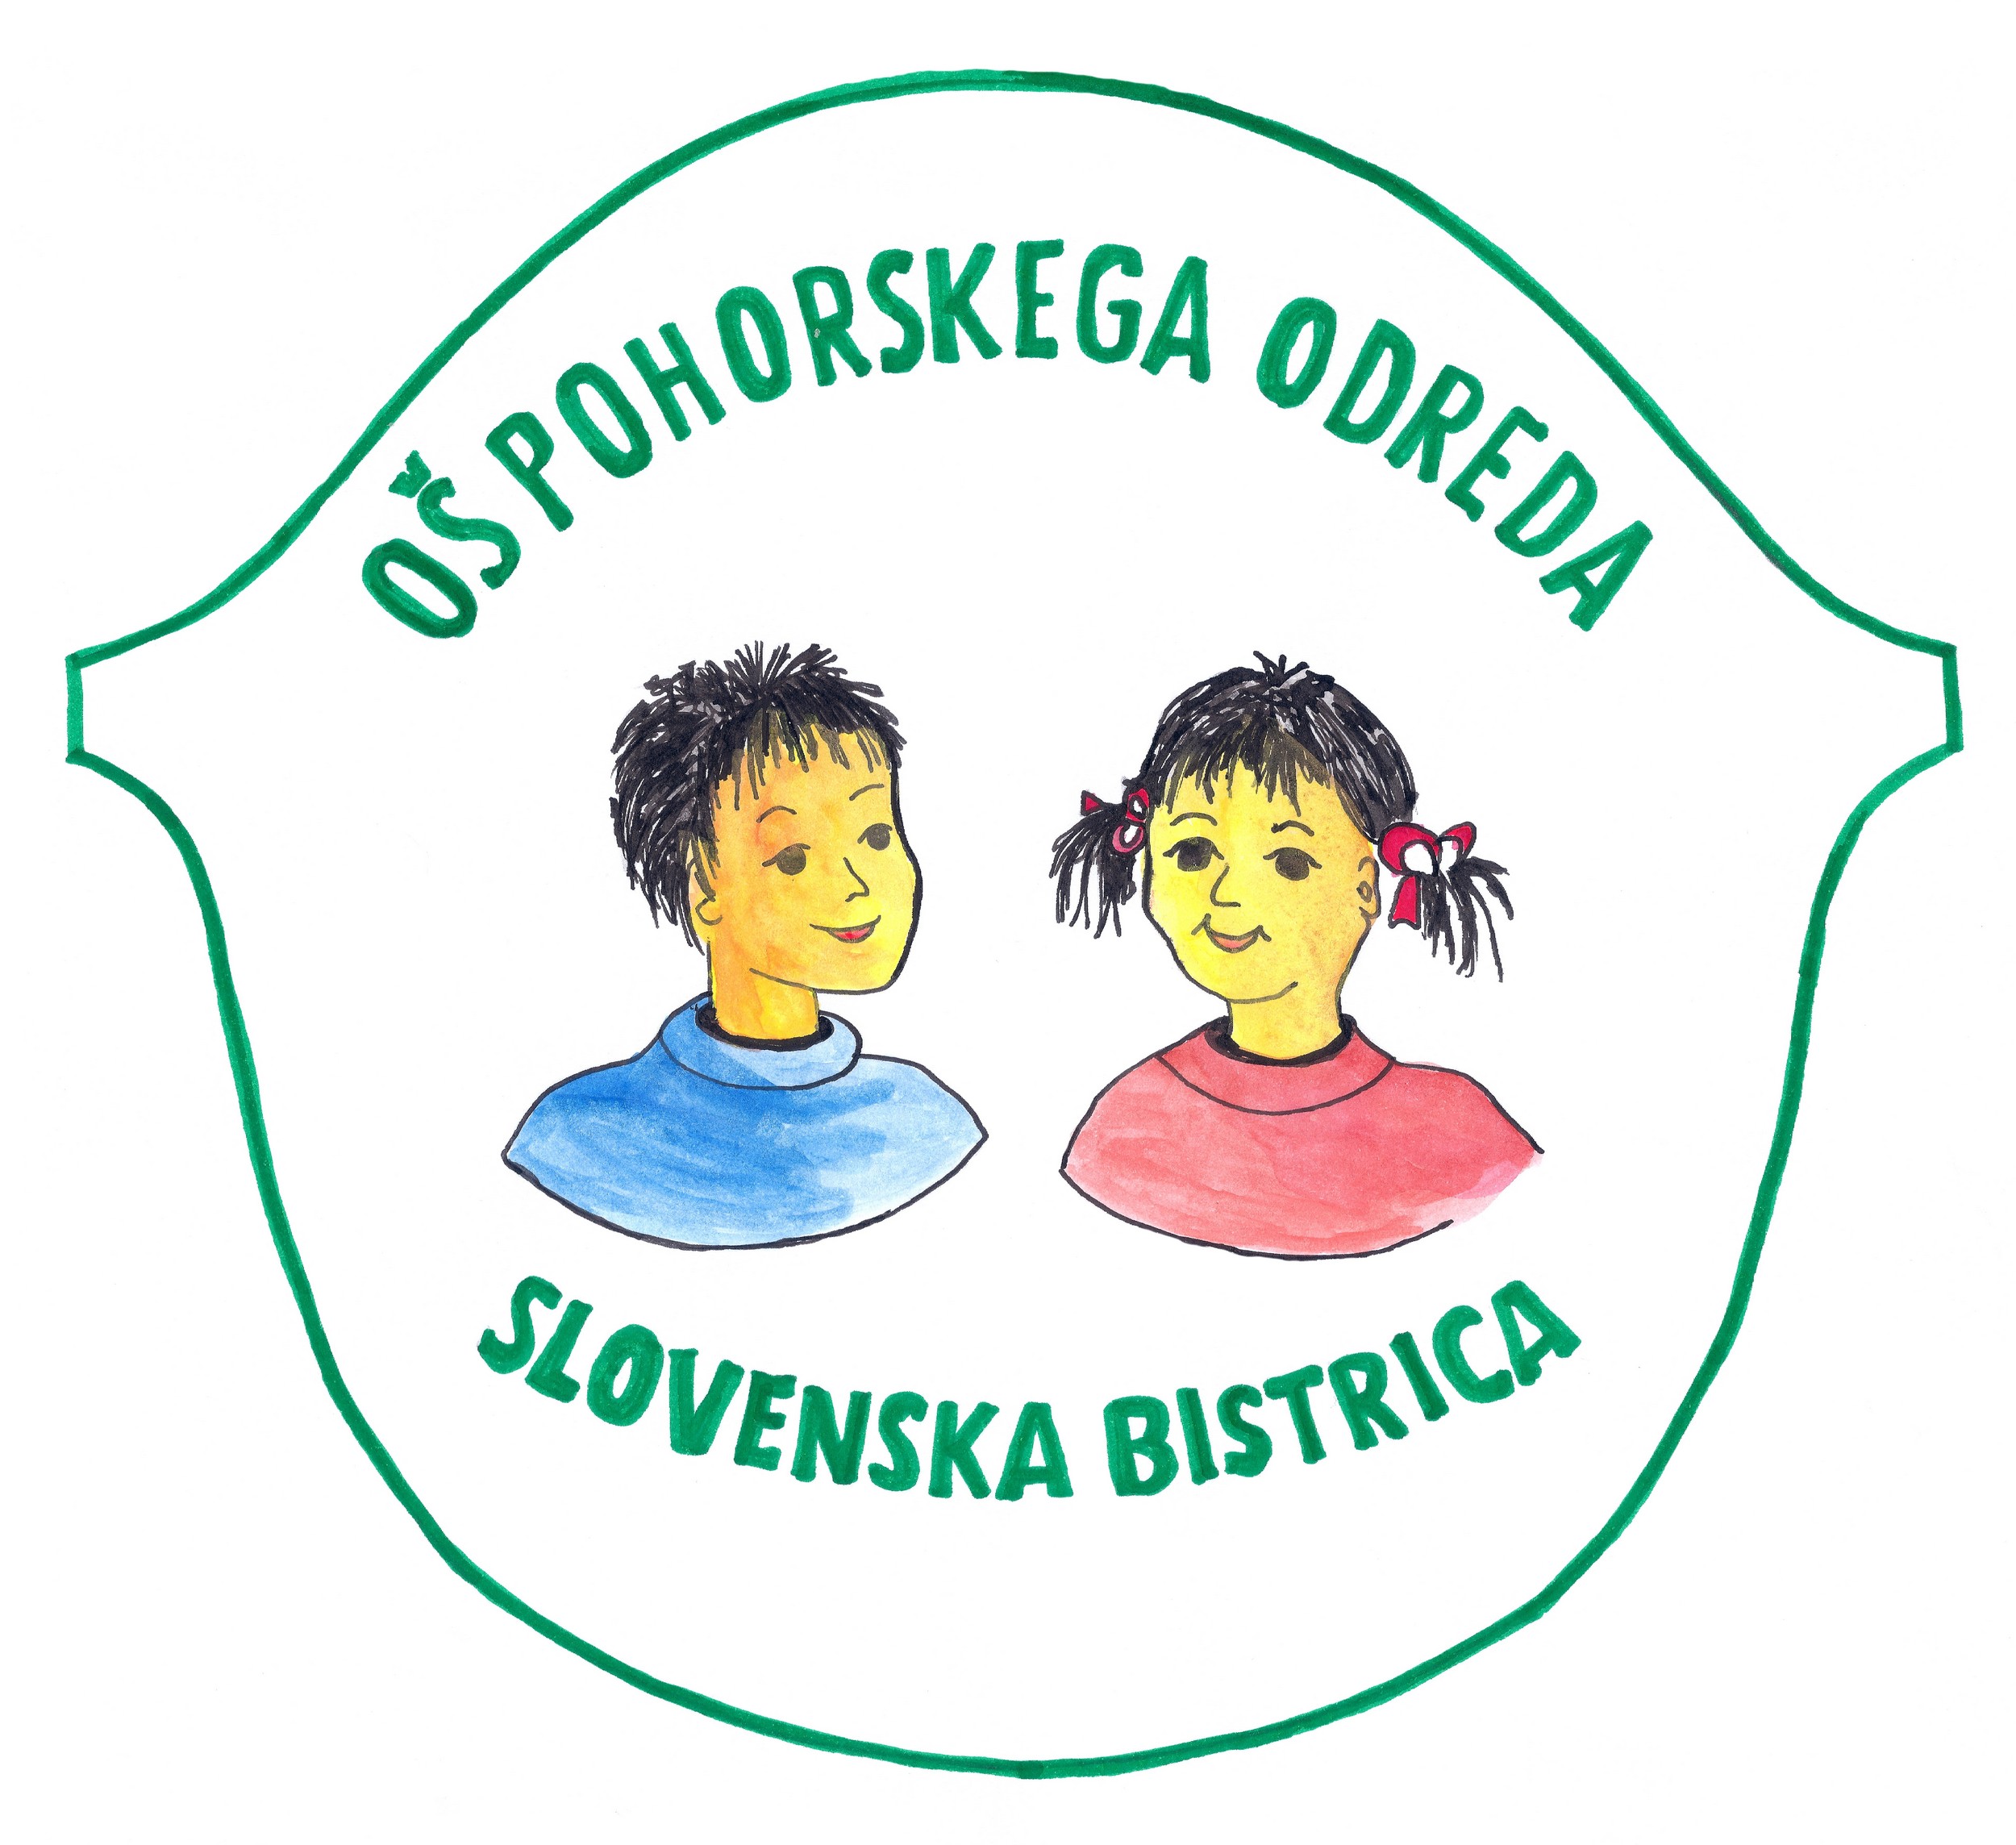 Osnovna šola Pohorskega odreda Slovenska Bistrica